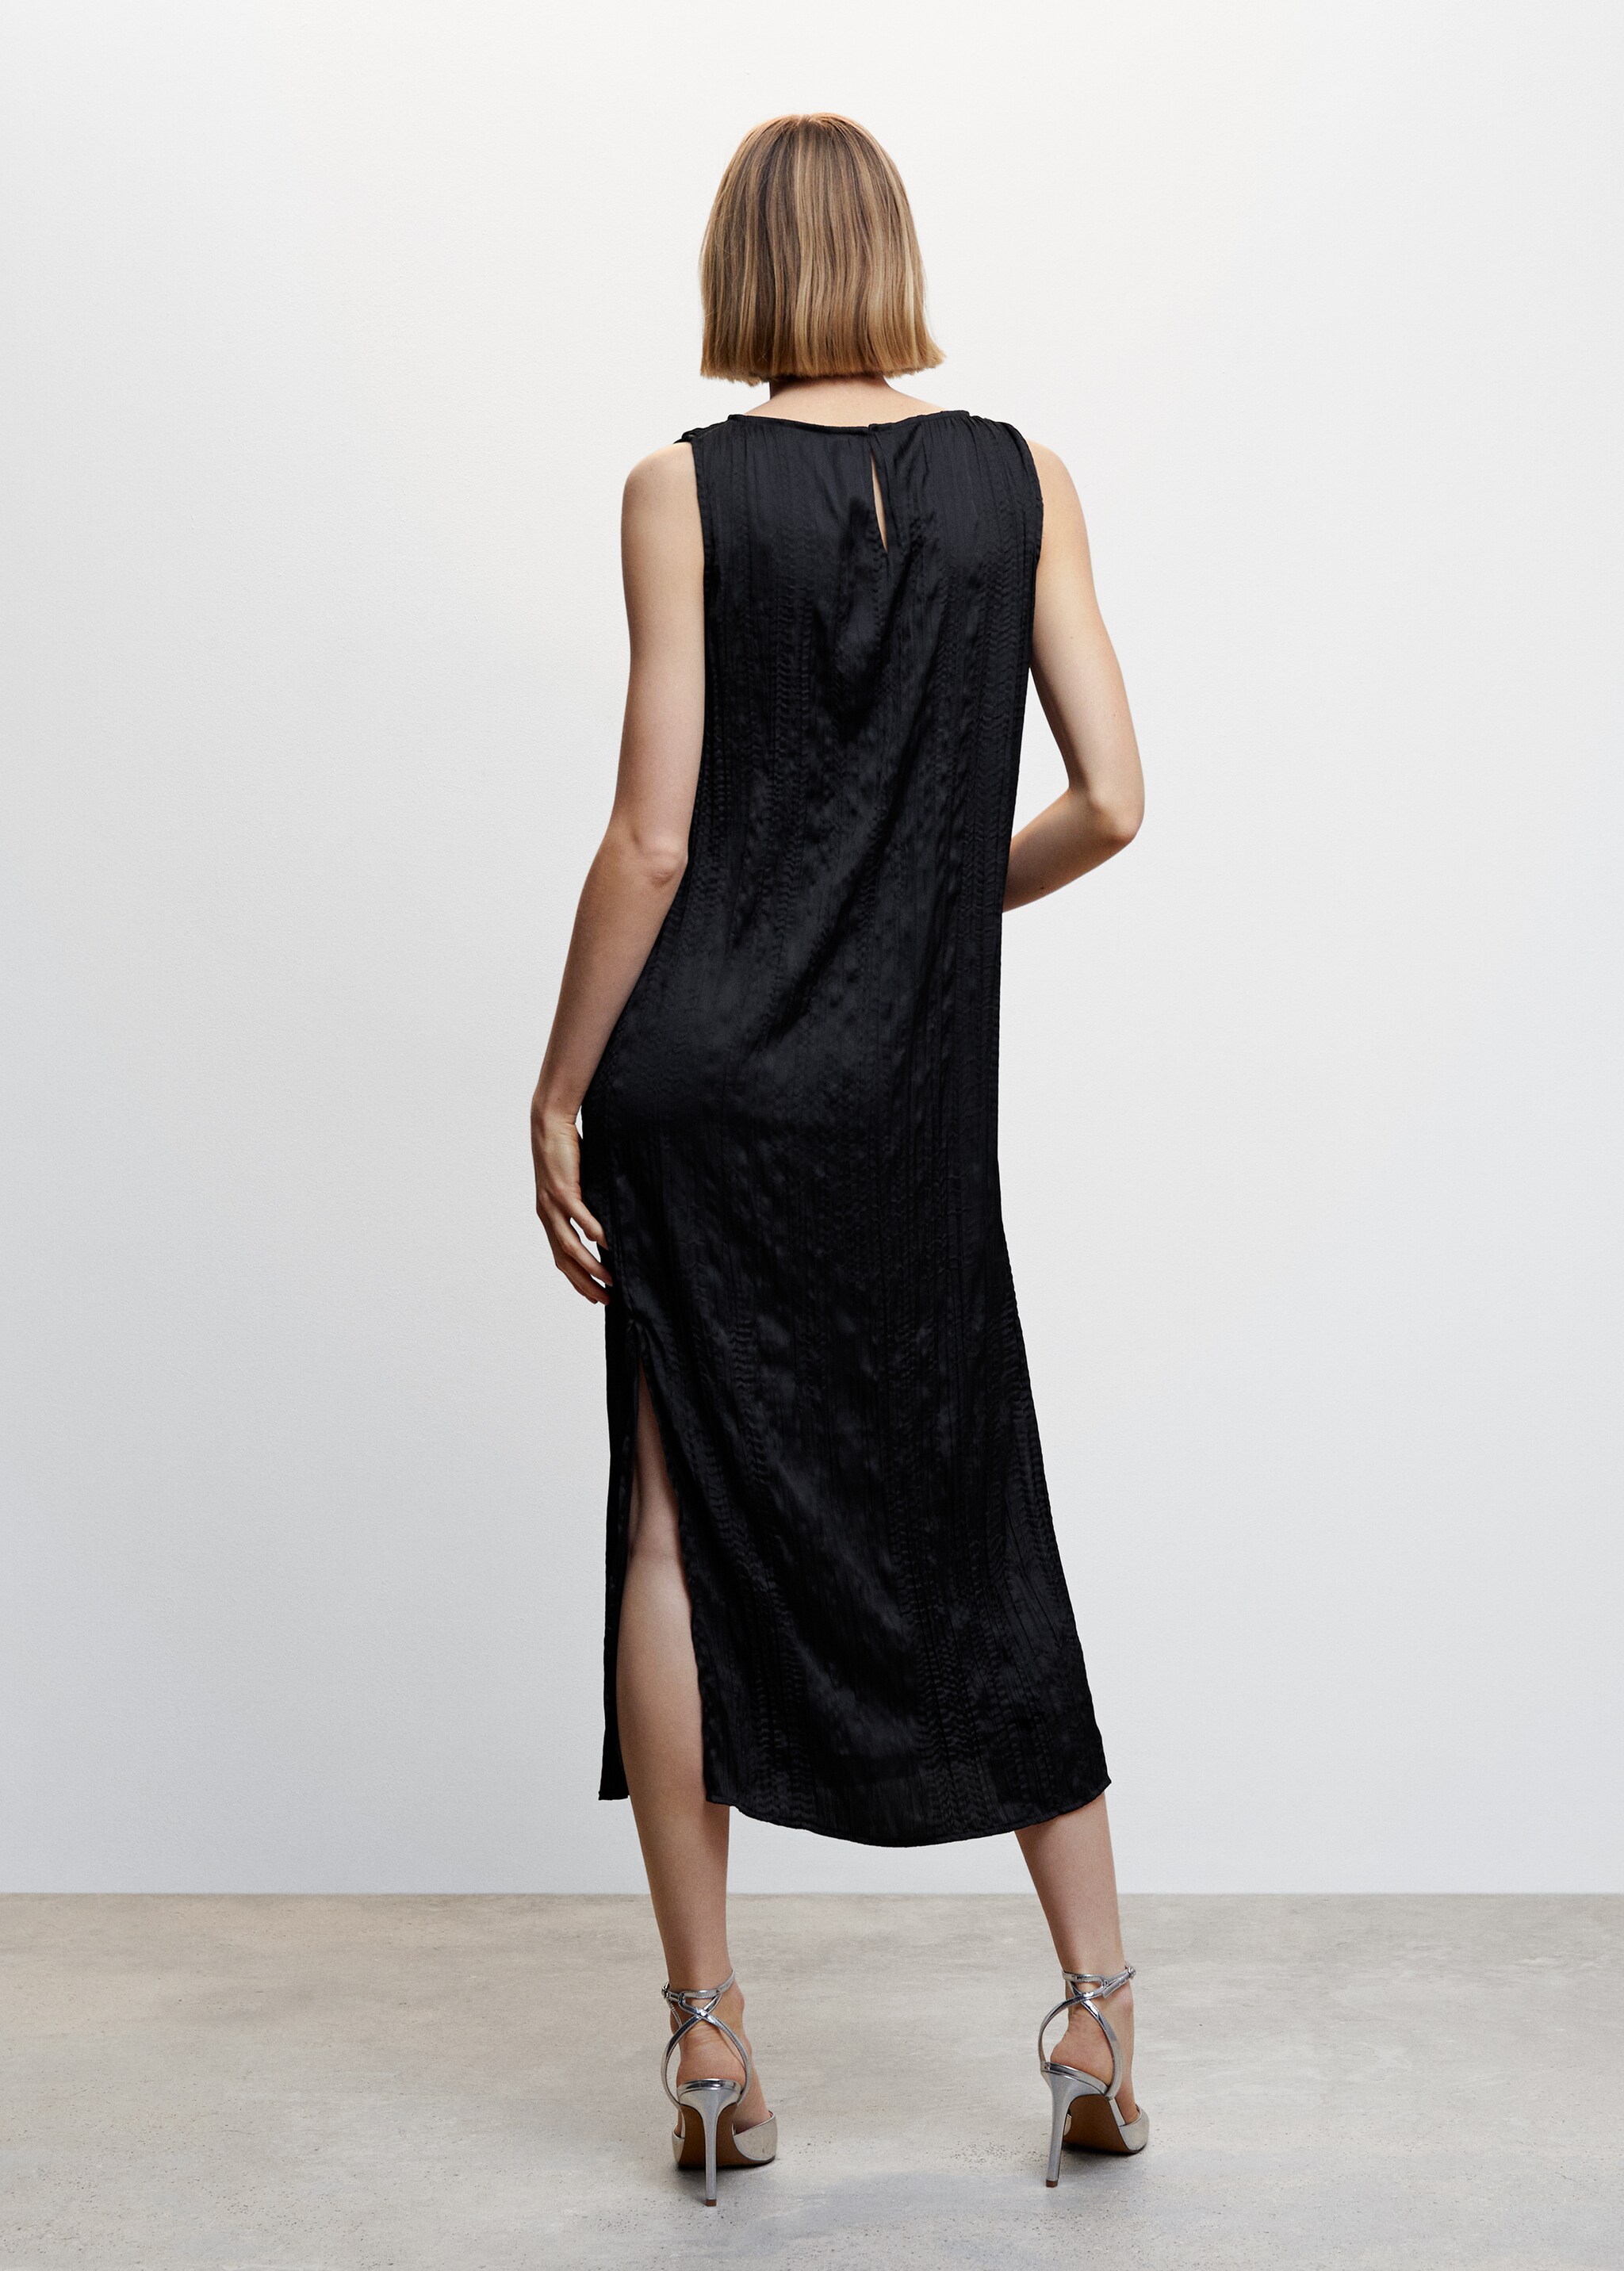 Schwarzes Midi-Kleid mit Textur - Rückseite des Artikels